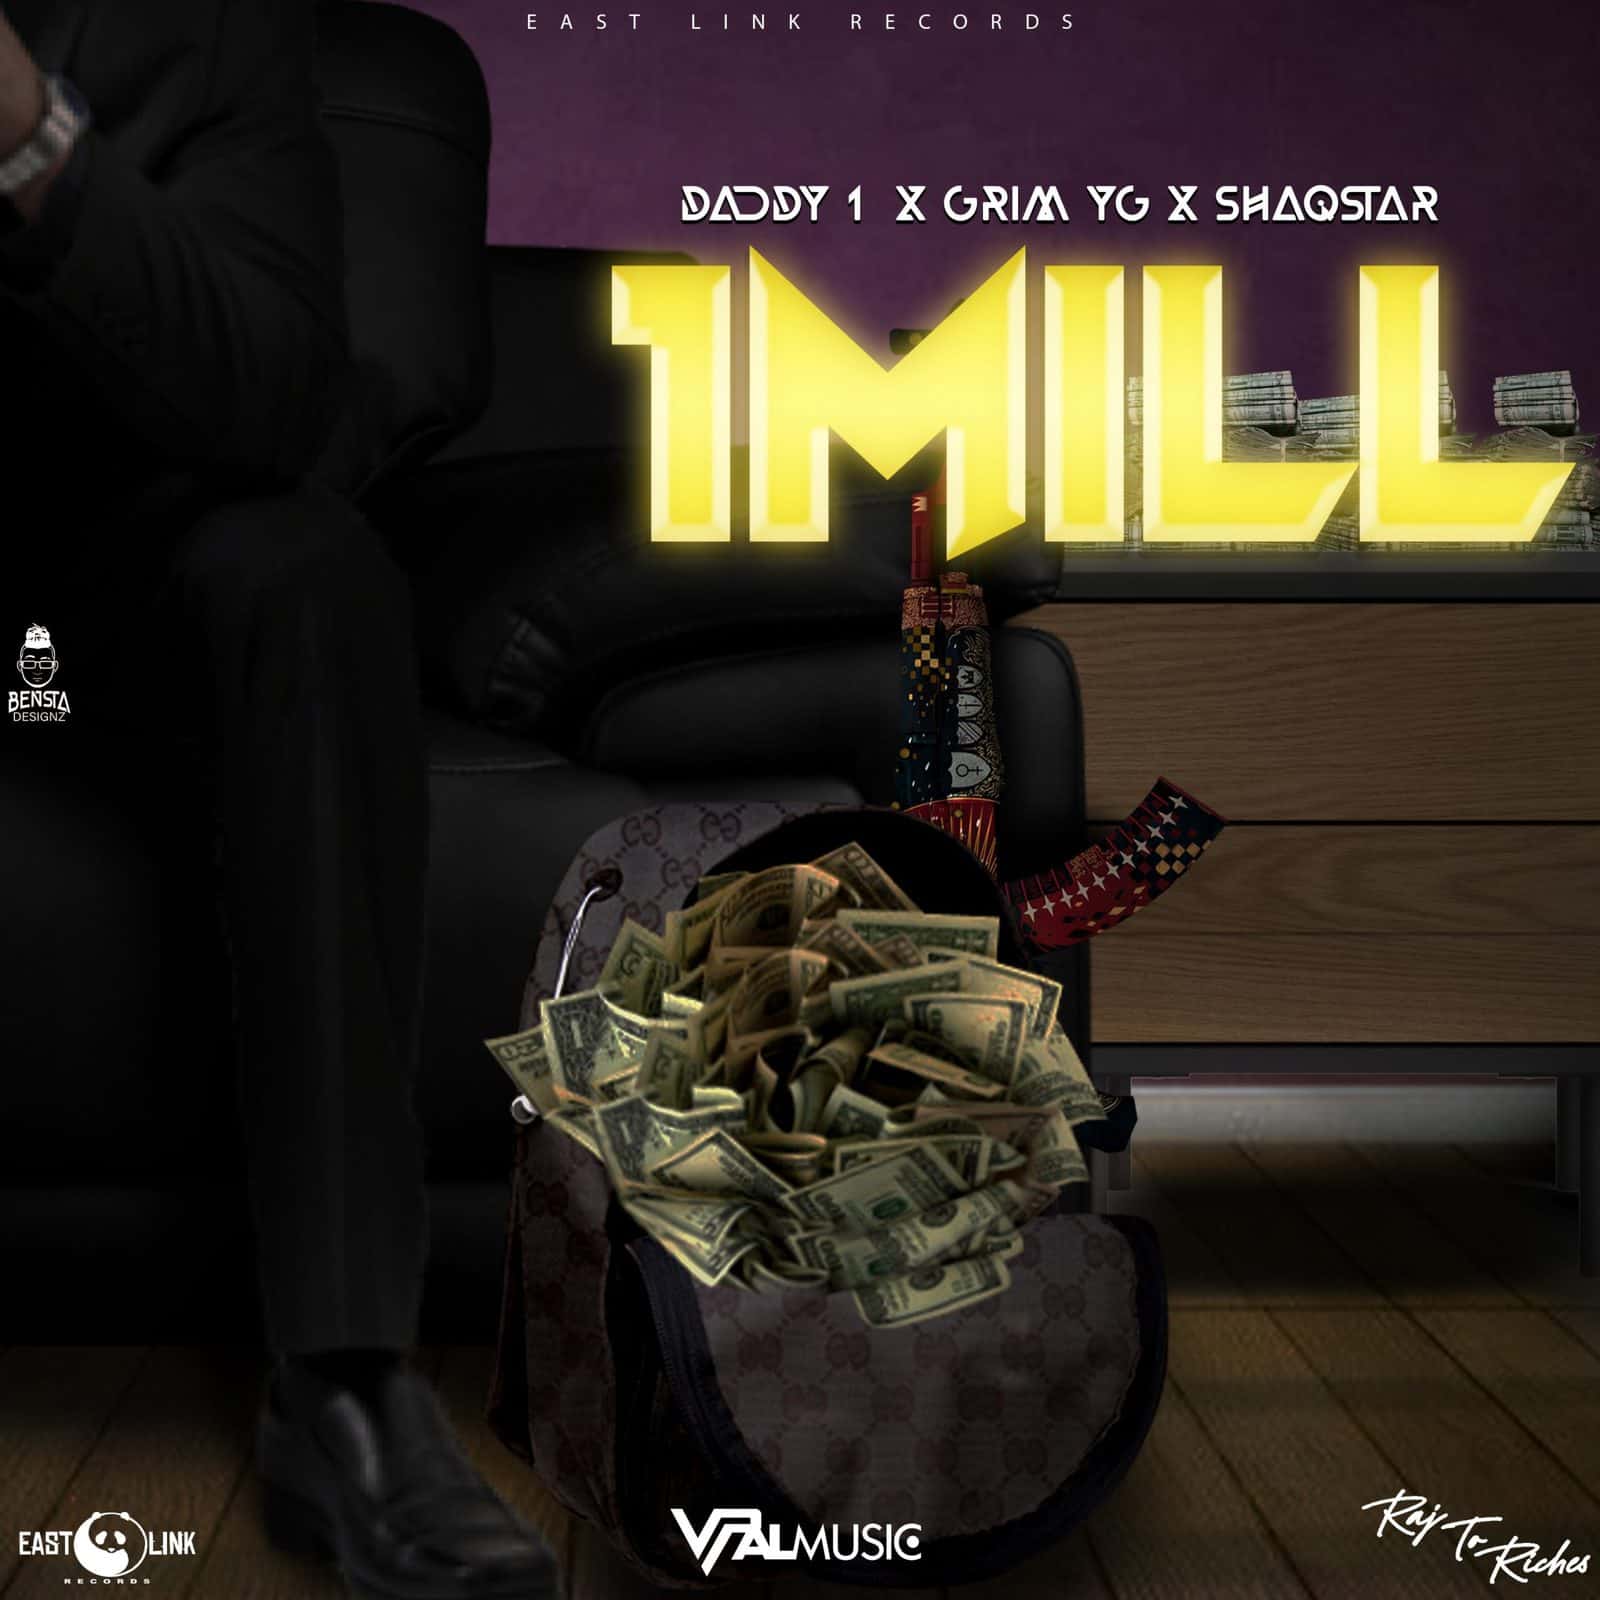 “1Mill” featuring Shaqstar, Daddy1, Grim YG